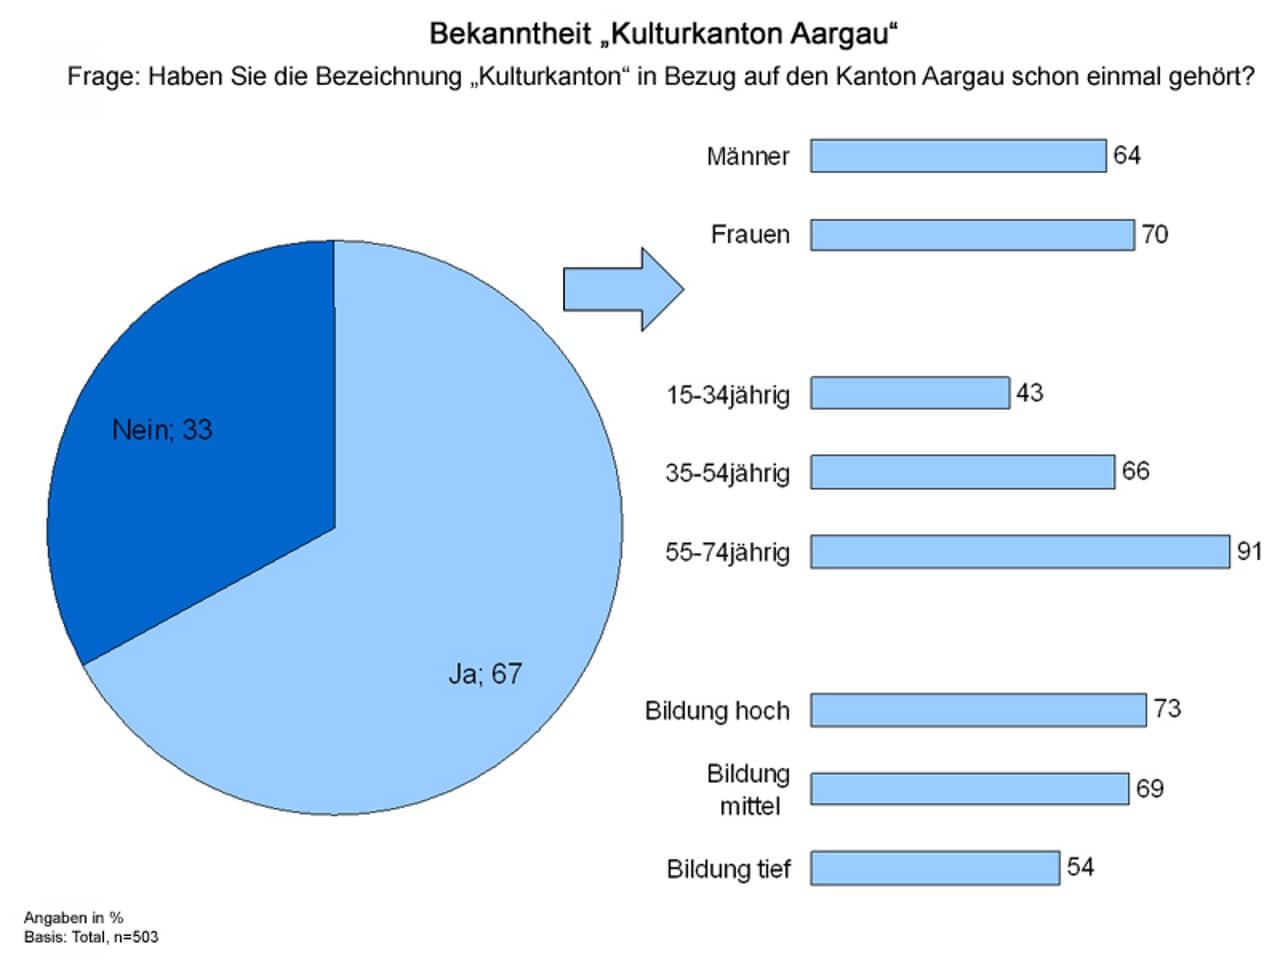 Kreisdiagramm der bekanntesten Aargauer Kulturinstitutionen, erhoben mit der Frage 'Haben Sie die Bezeichnung Kulturkanton in Bezug auf den Kanton Aargau schon einmal gehört?'. Resultate: Nein: 33%, Ja: 67%. Der Ja-Anteil schlüsselt sich wie folgt auf: Männer: 64%, Frauen: 70%; 15-34jährig: 43%, 35-54jährig: 66%, 55-75jährig: 91%; Bildung hoch: 73%, Bildung mittel: 69%, Bildung tief: 54%.